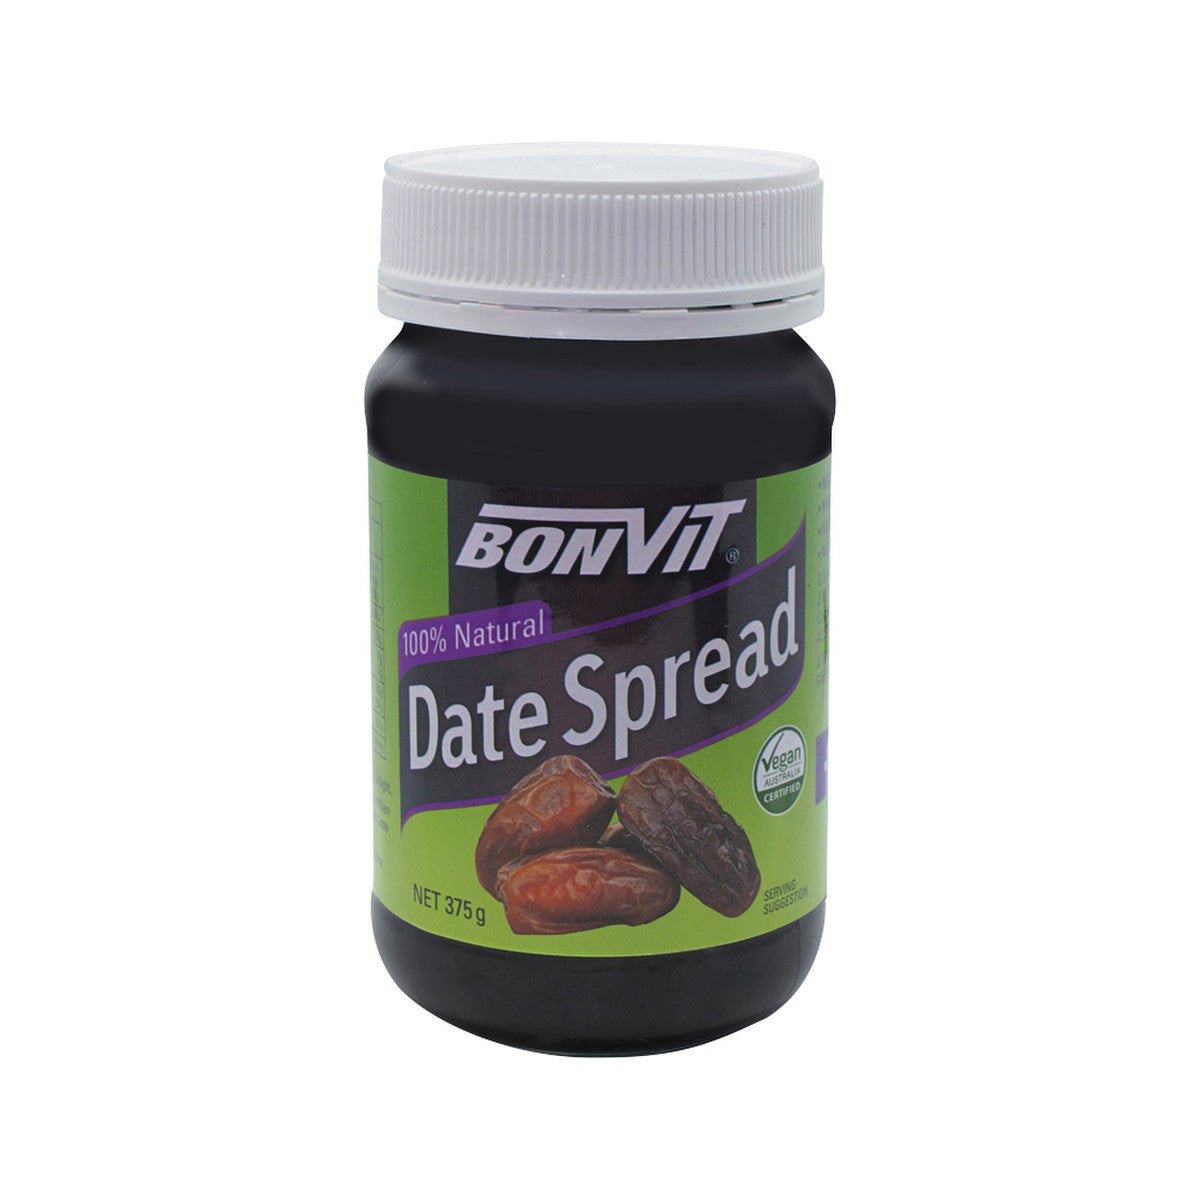 Bonvit - Date Spread